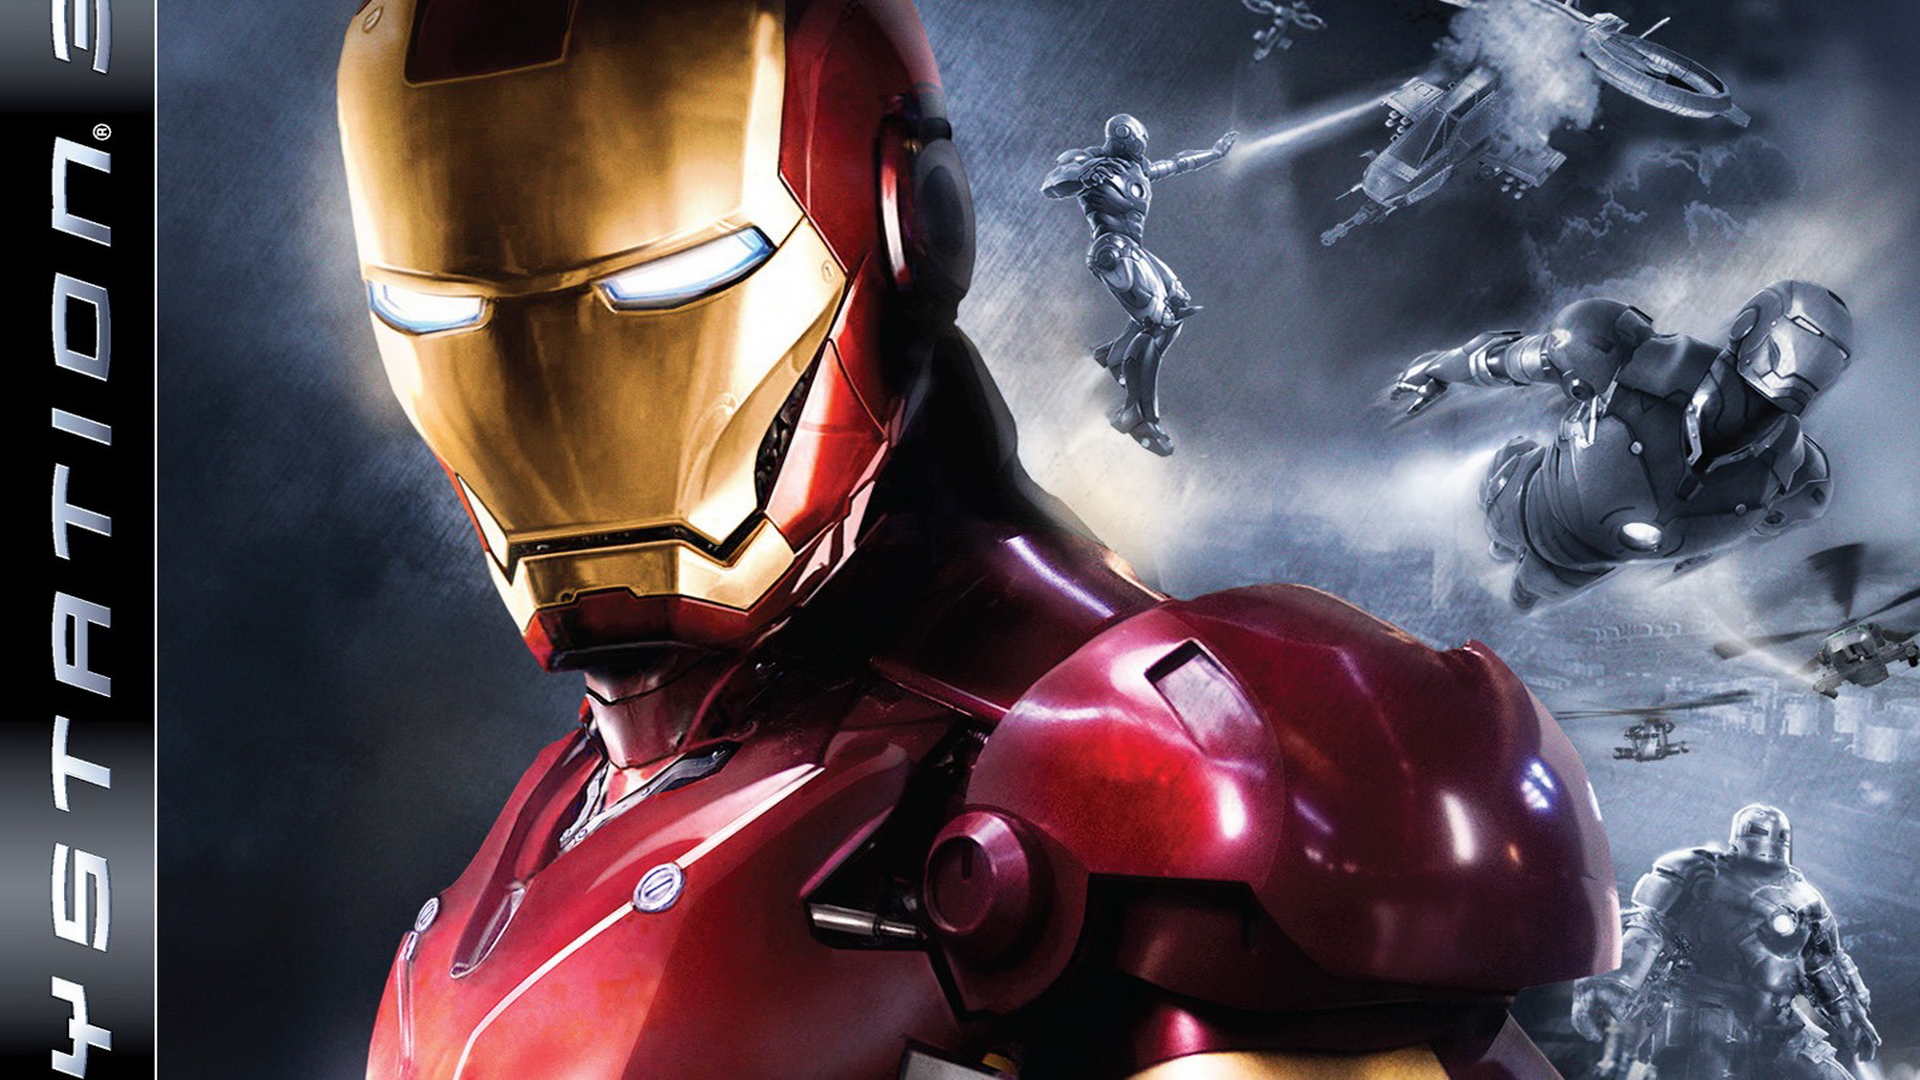 iron man wallpaper hd 1080p,iron man,superhero,fictional character,suit actor,cg artwork